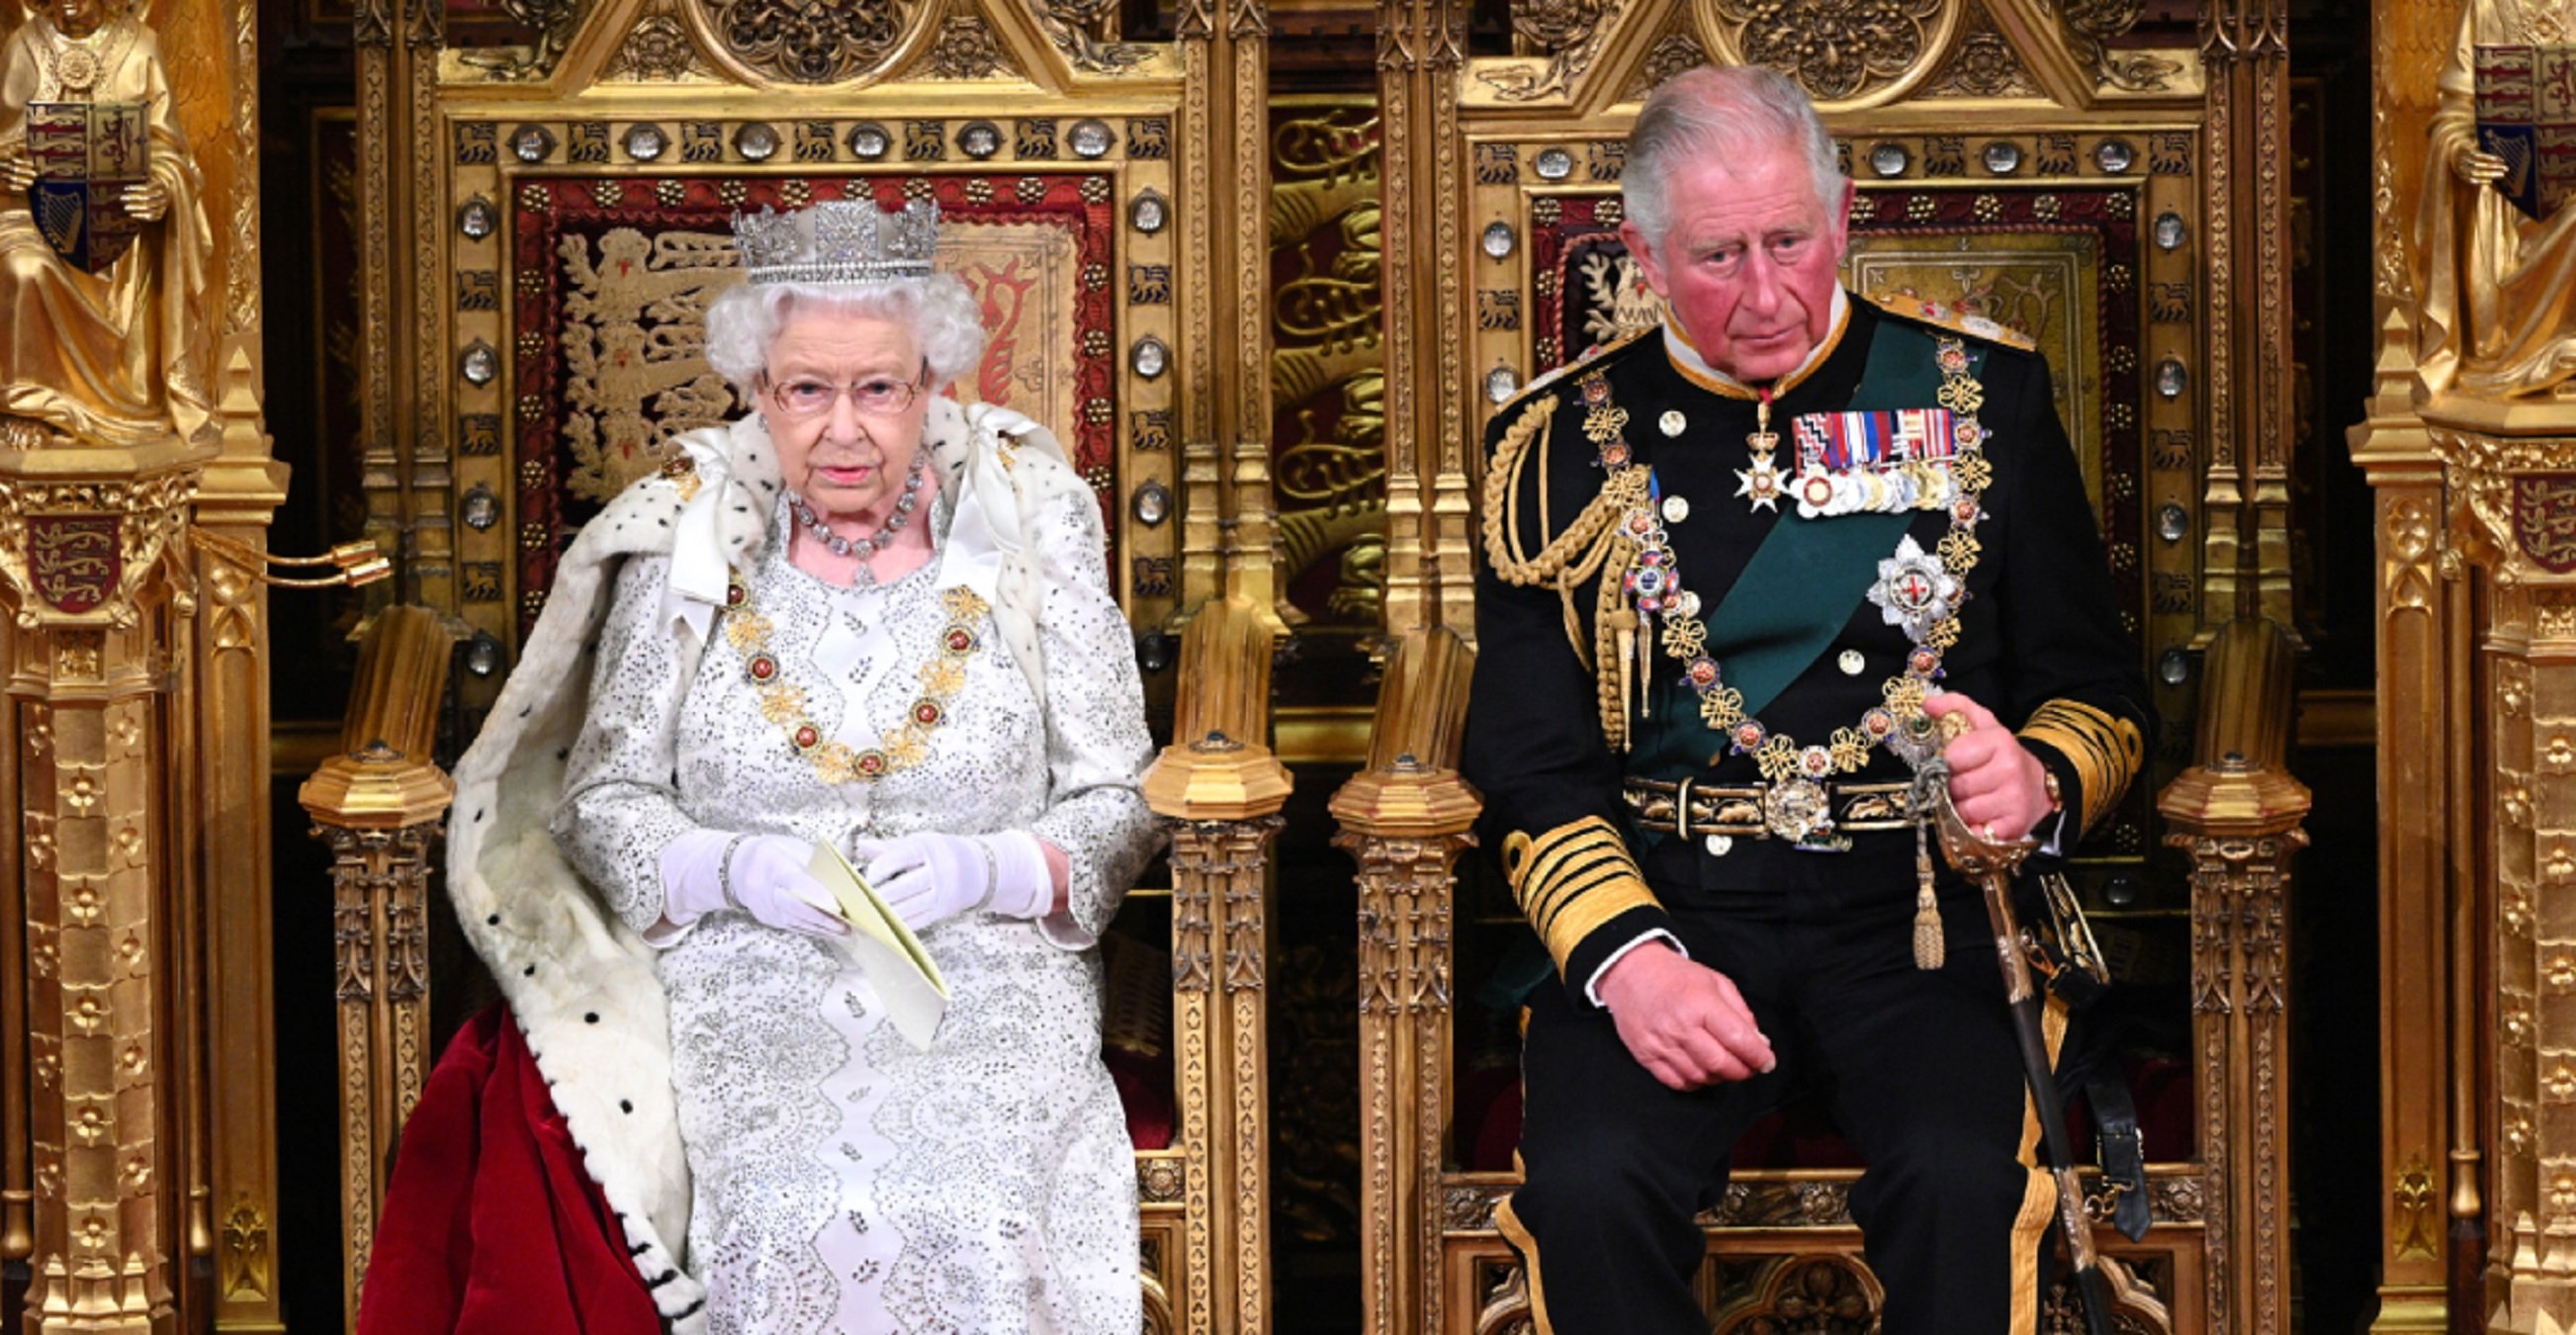 Carles III ja és més ric que la seva mare, Elisabet II: aquesta és la seva fortuna en milions de lliures